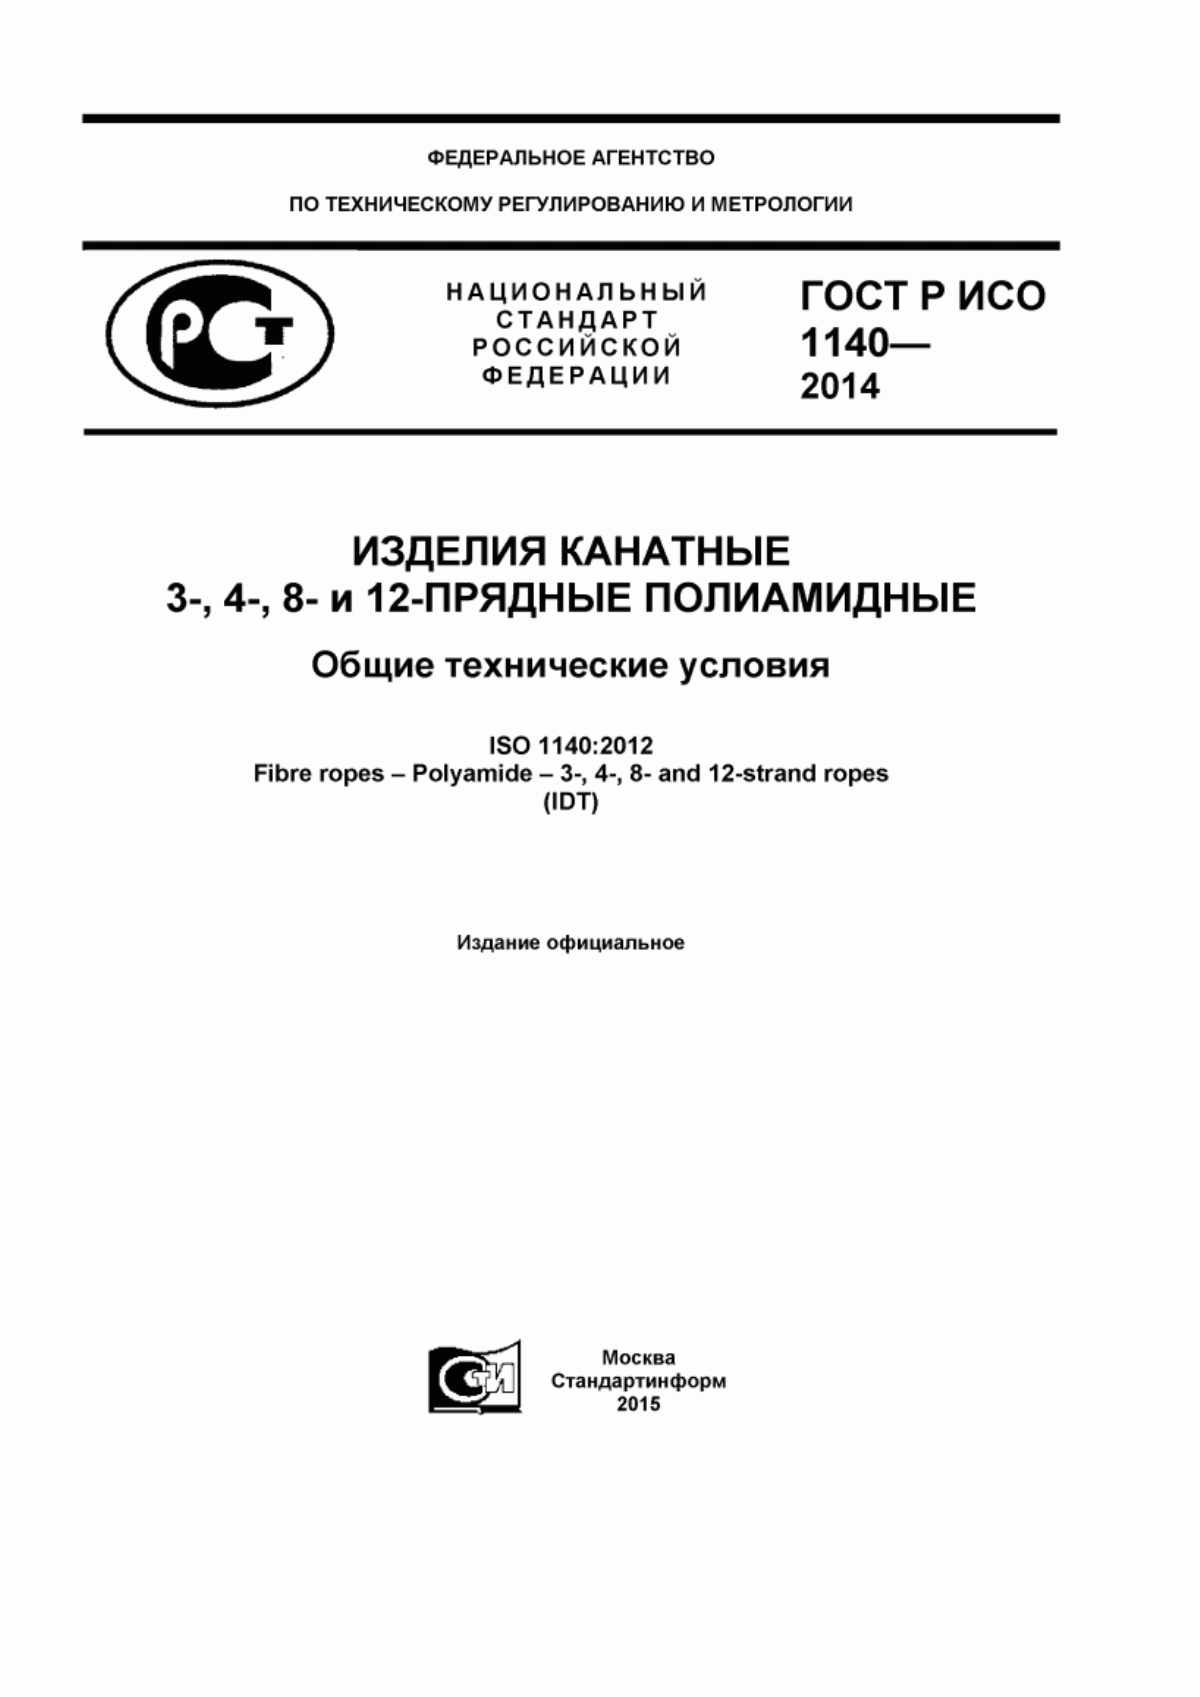 ГОСТ Р ИСО 1140-2014 Изделия канатные 3-,4-,8- и 12-прядные полиамидные. Общие технические условия